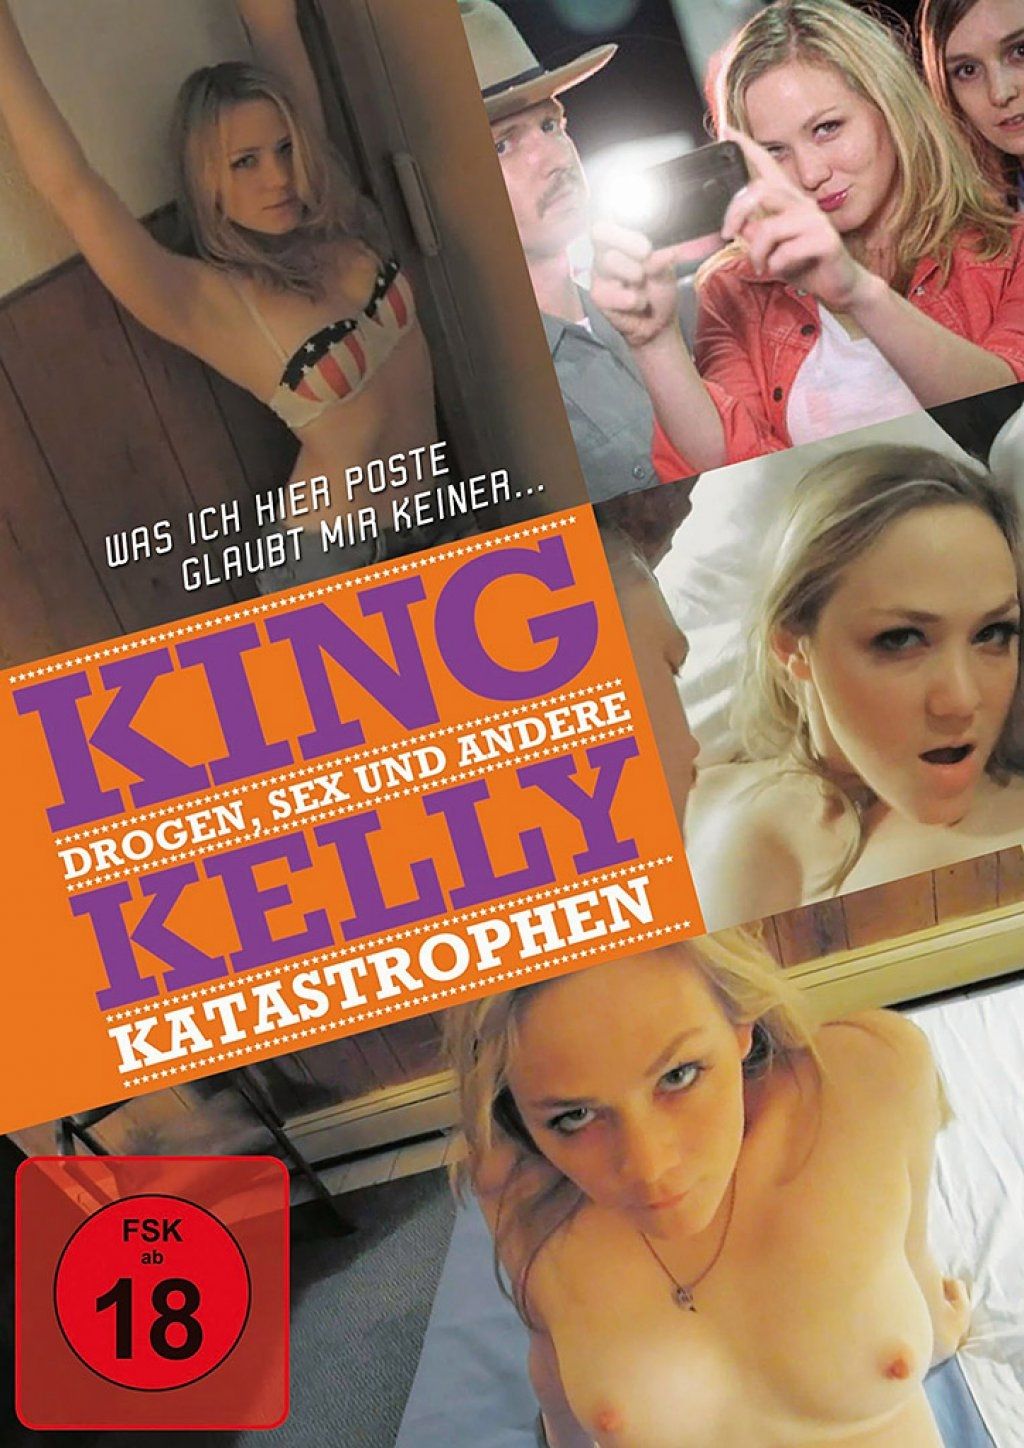 King Kelly - Drogen, Sex und andere Katastrophen